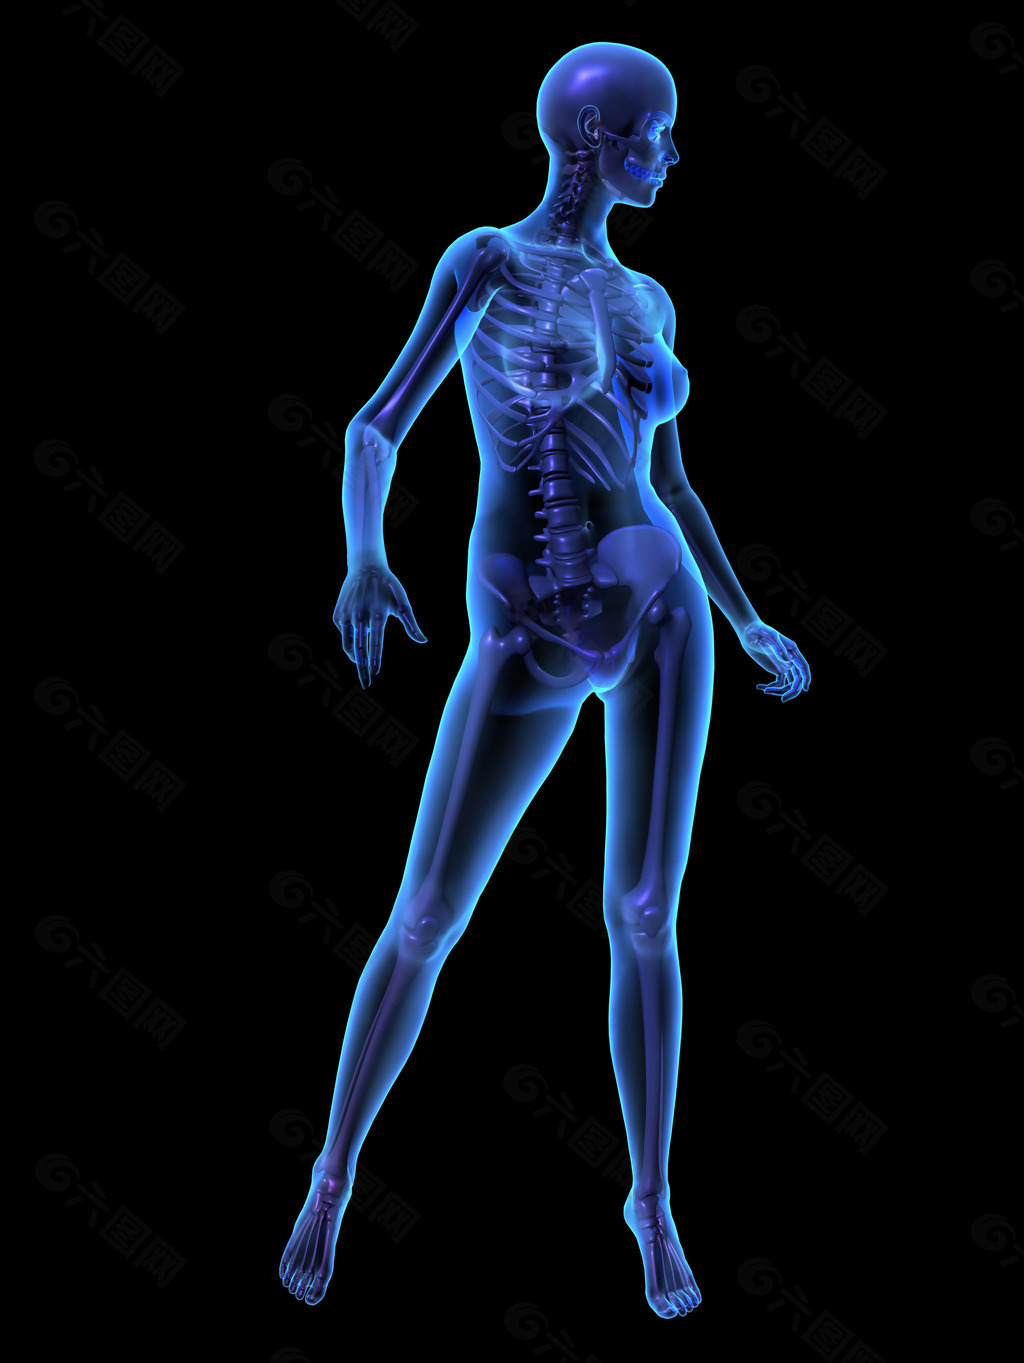 人体教程:躯干结构的骨骼与肌肉讲解 - 知乎